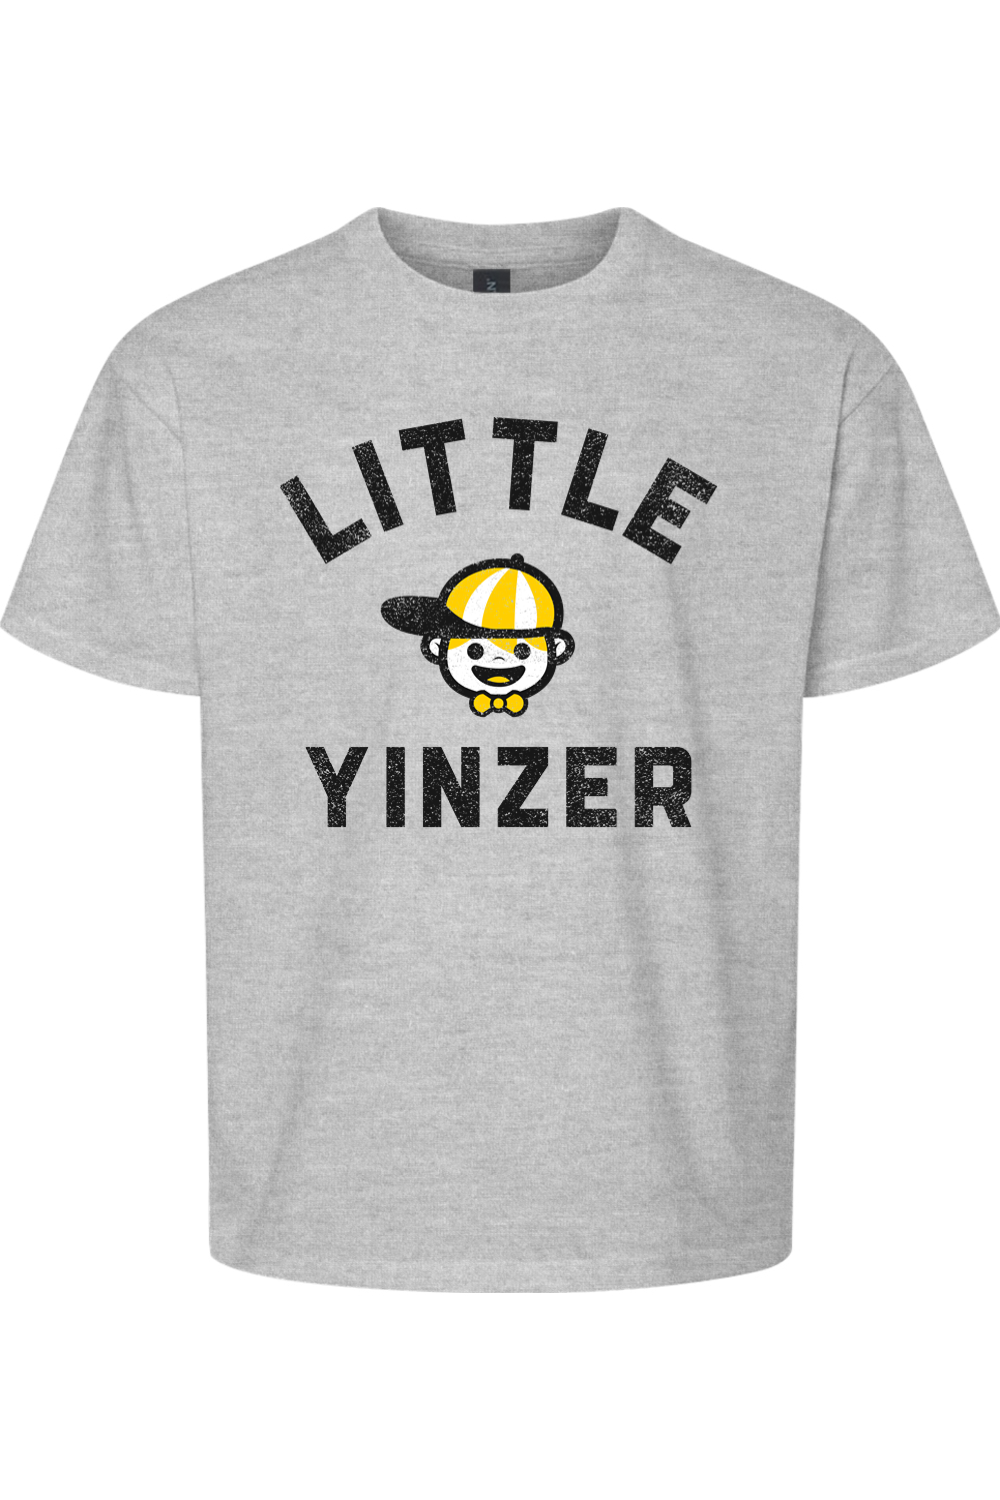 Little Yinzer - Kids Tee - Yinzylvania